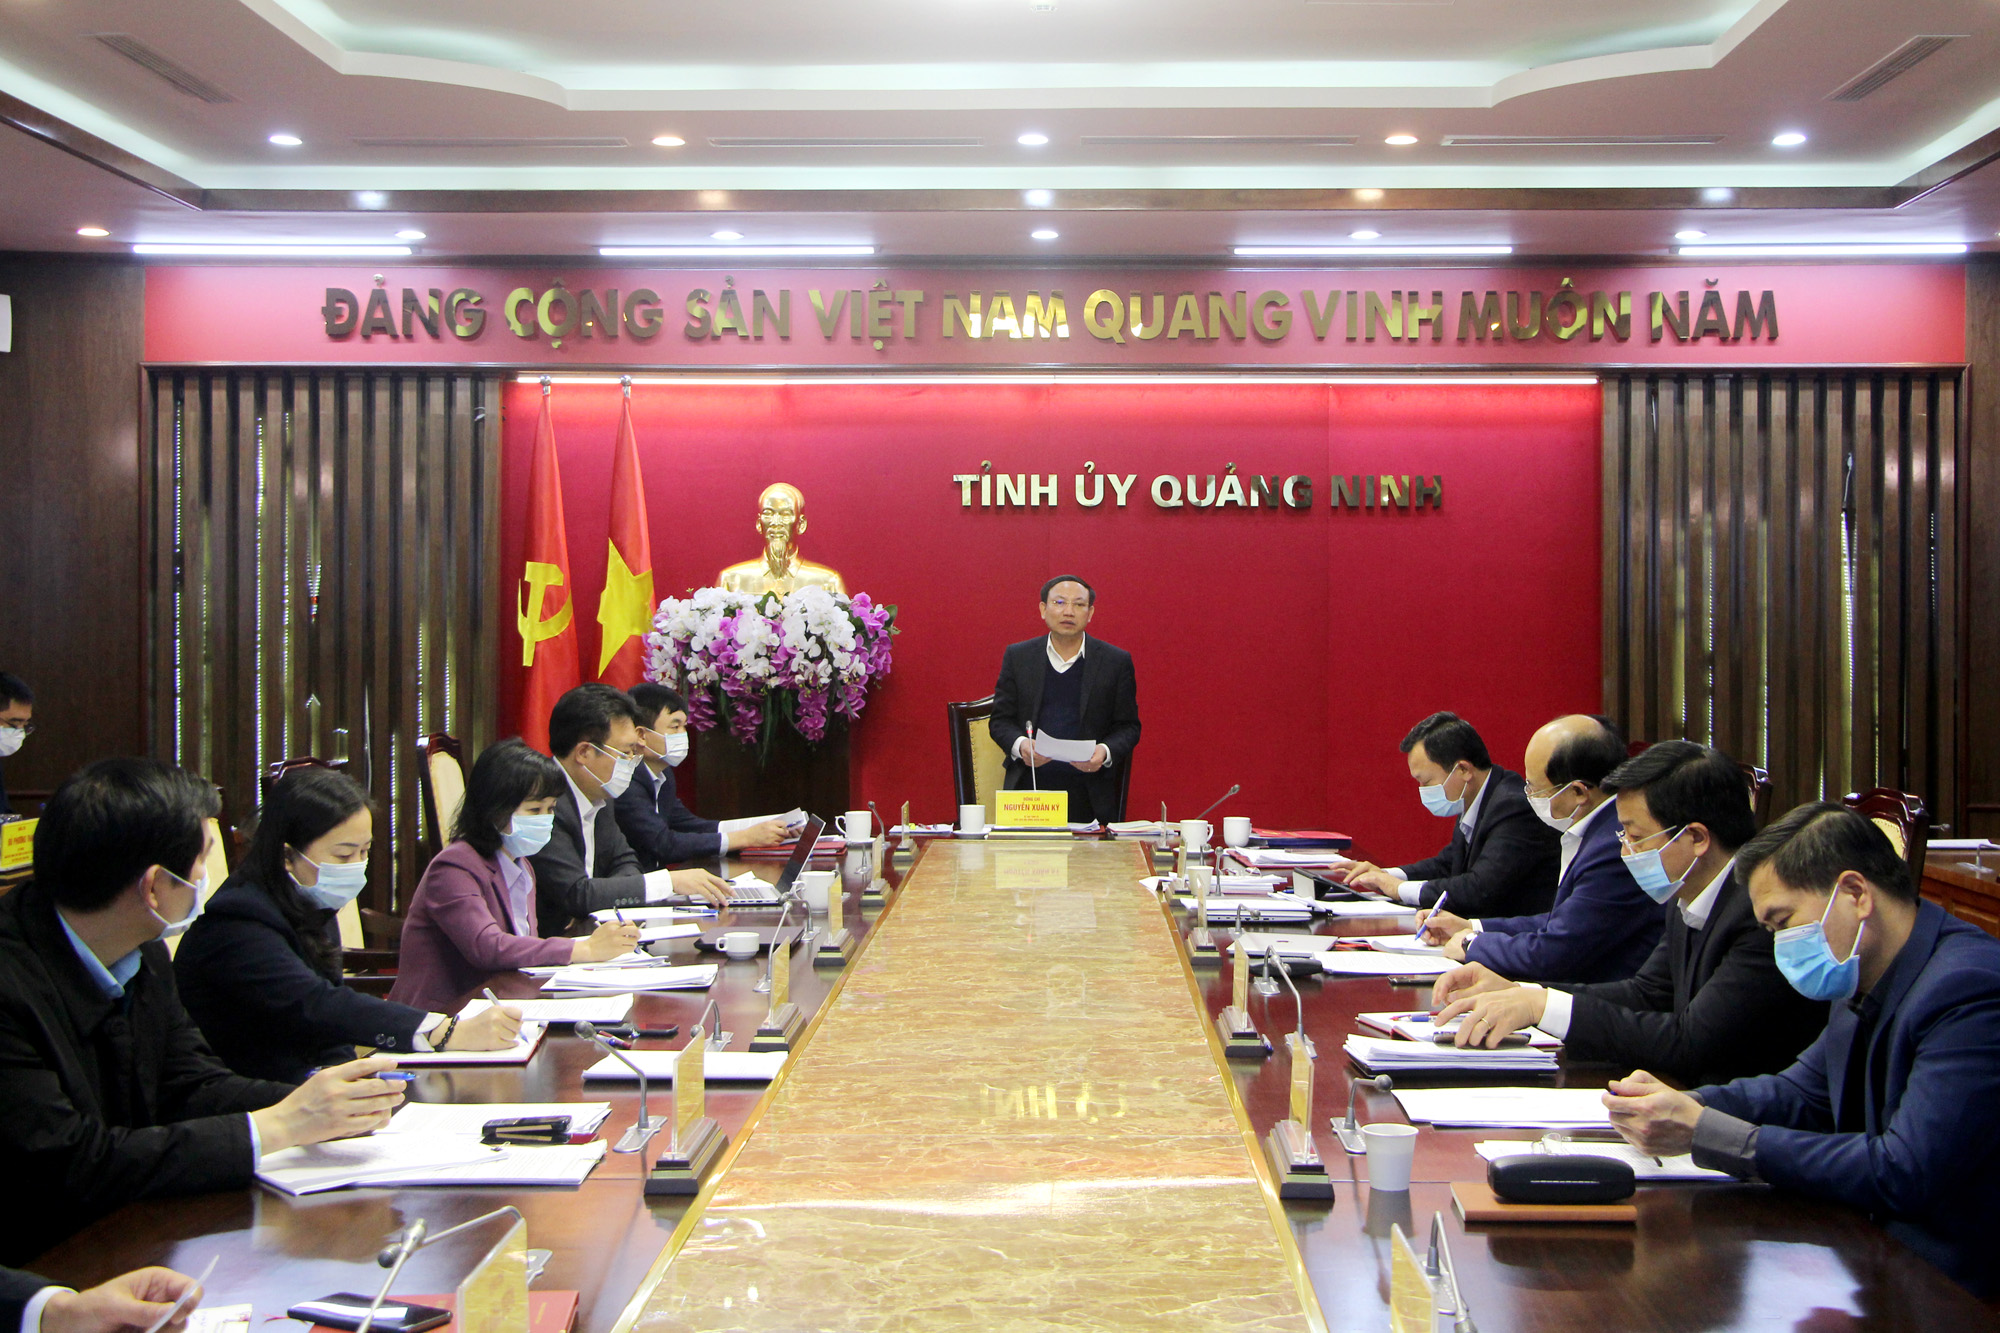 Đồng chí Nguyễn Xuân Ký, Bí thư Tỉnh ủy, Chủ tịch HĐND tỉnh, chủ trì hội nghị kiểm điểm tập thể, cá nhân các đồng chí Ủy viên BTV Tỉnh ủy.